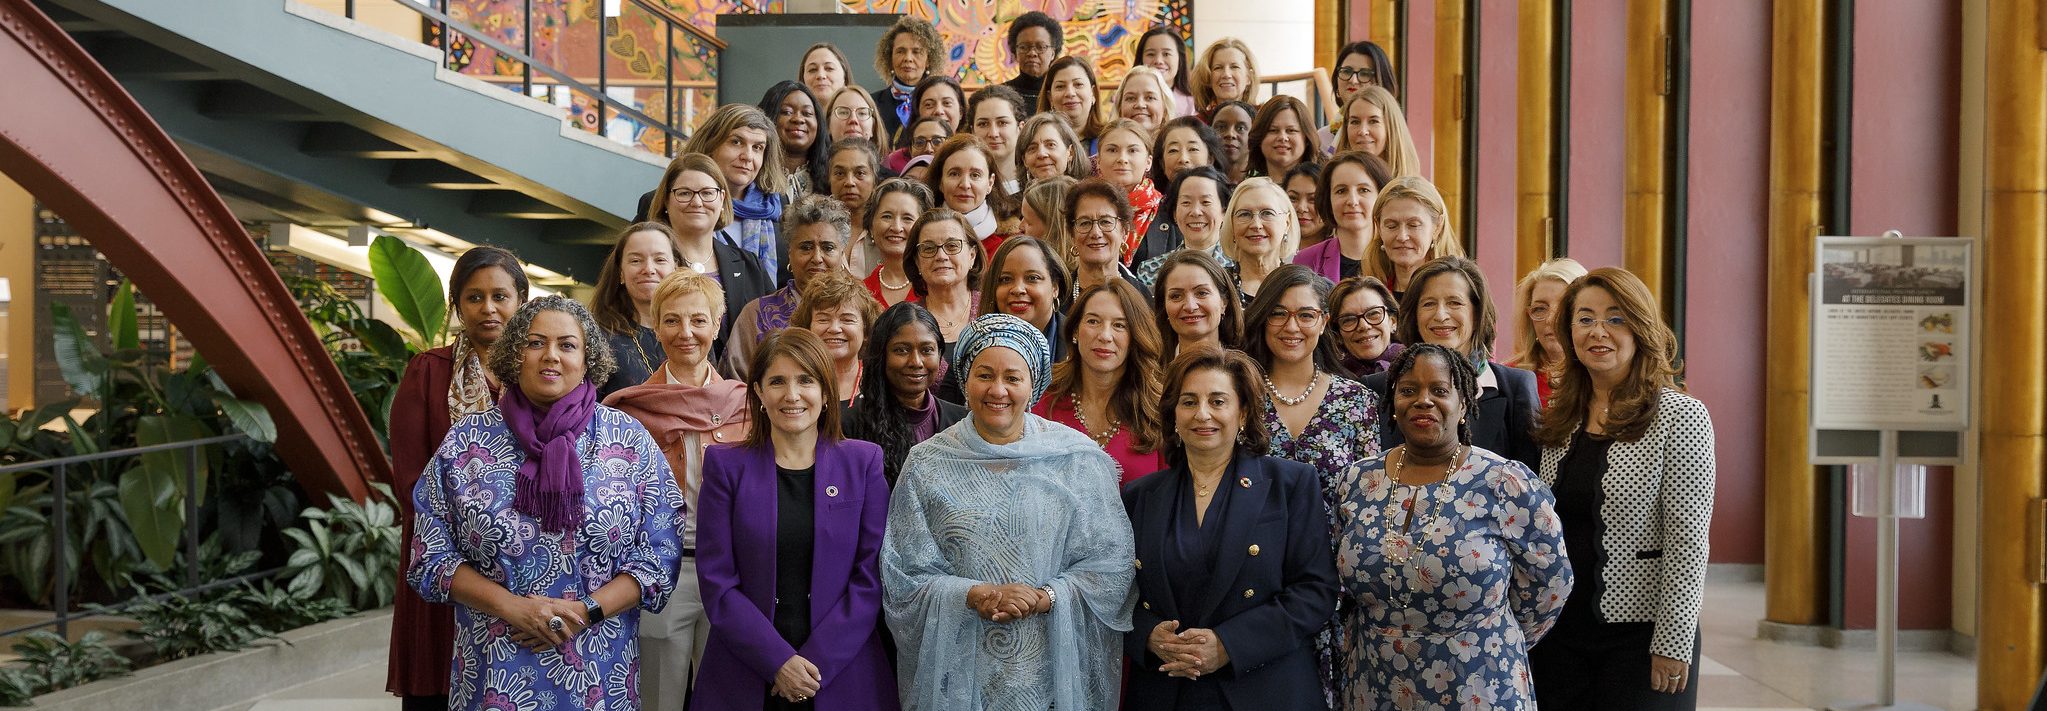 Gruppenbild von Frauen - Frauen in Führungspositionen - UN Women Deutschland